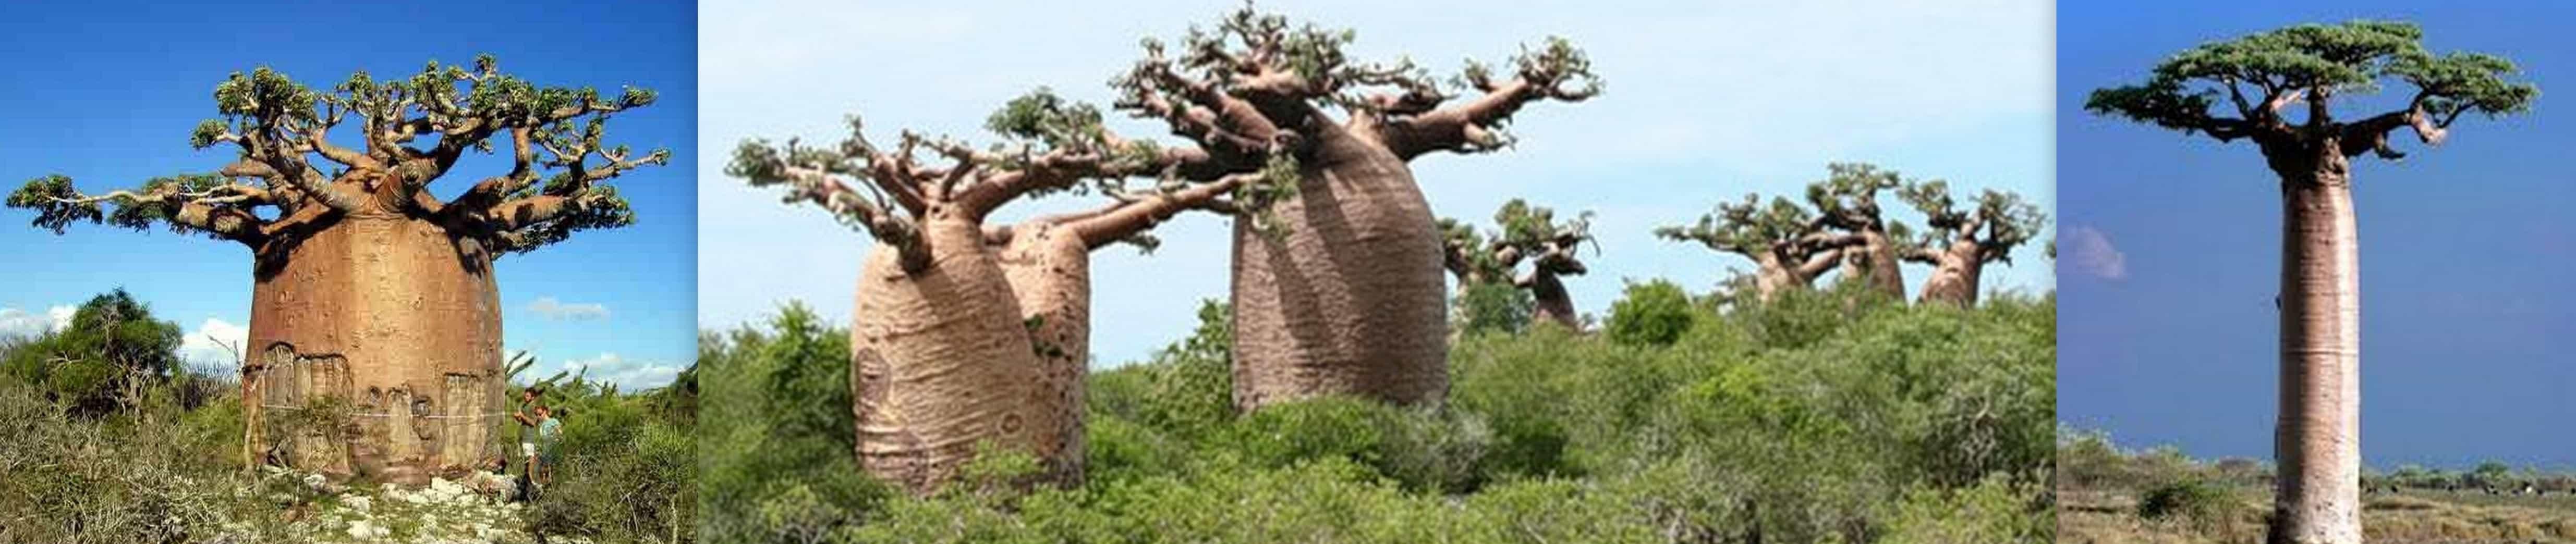 Самые необычные деревья на Земле